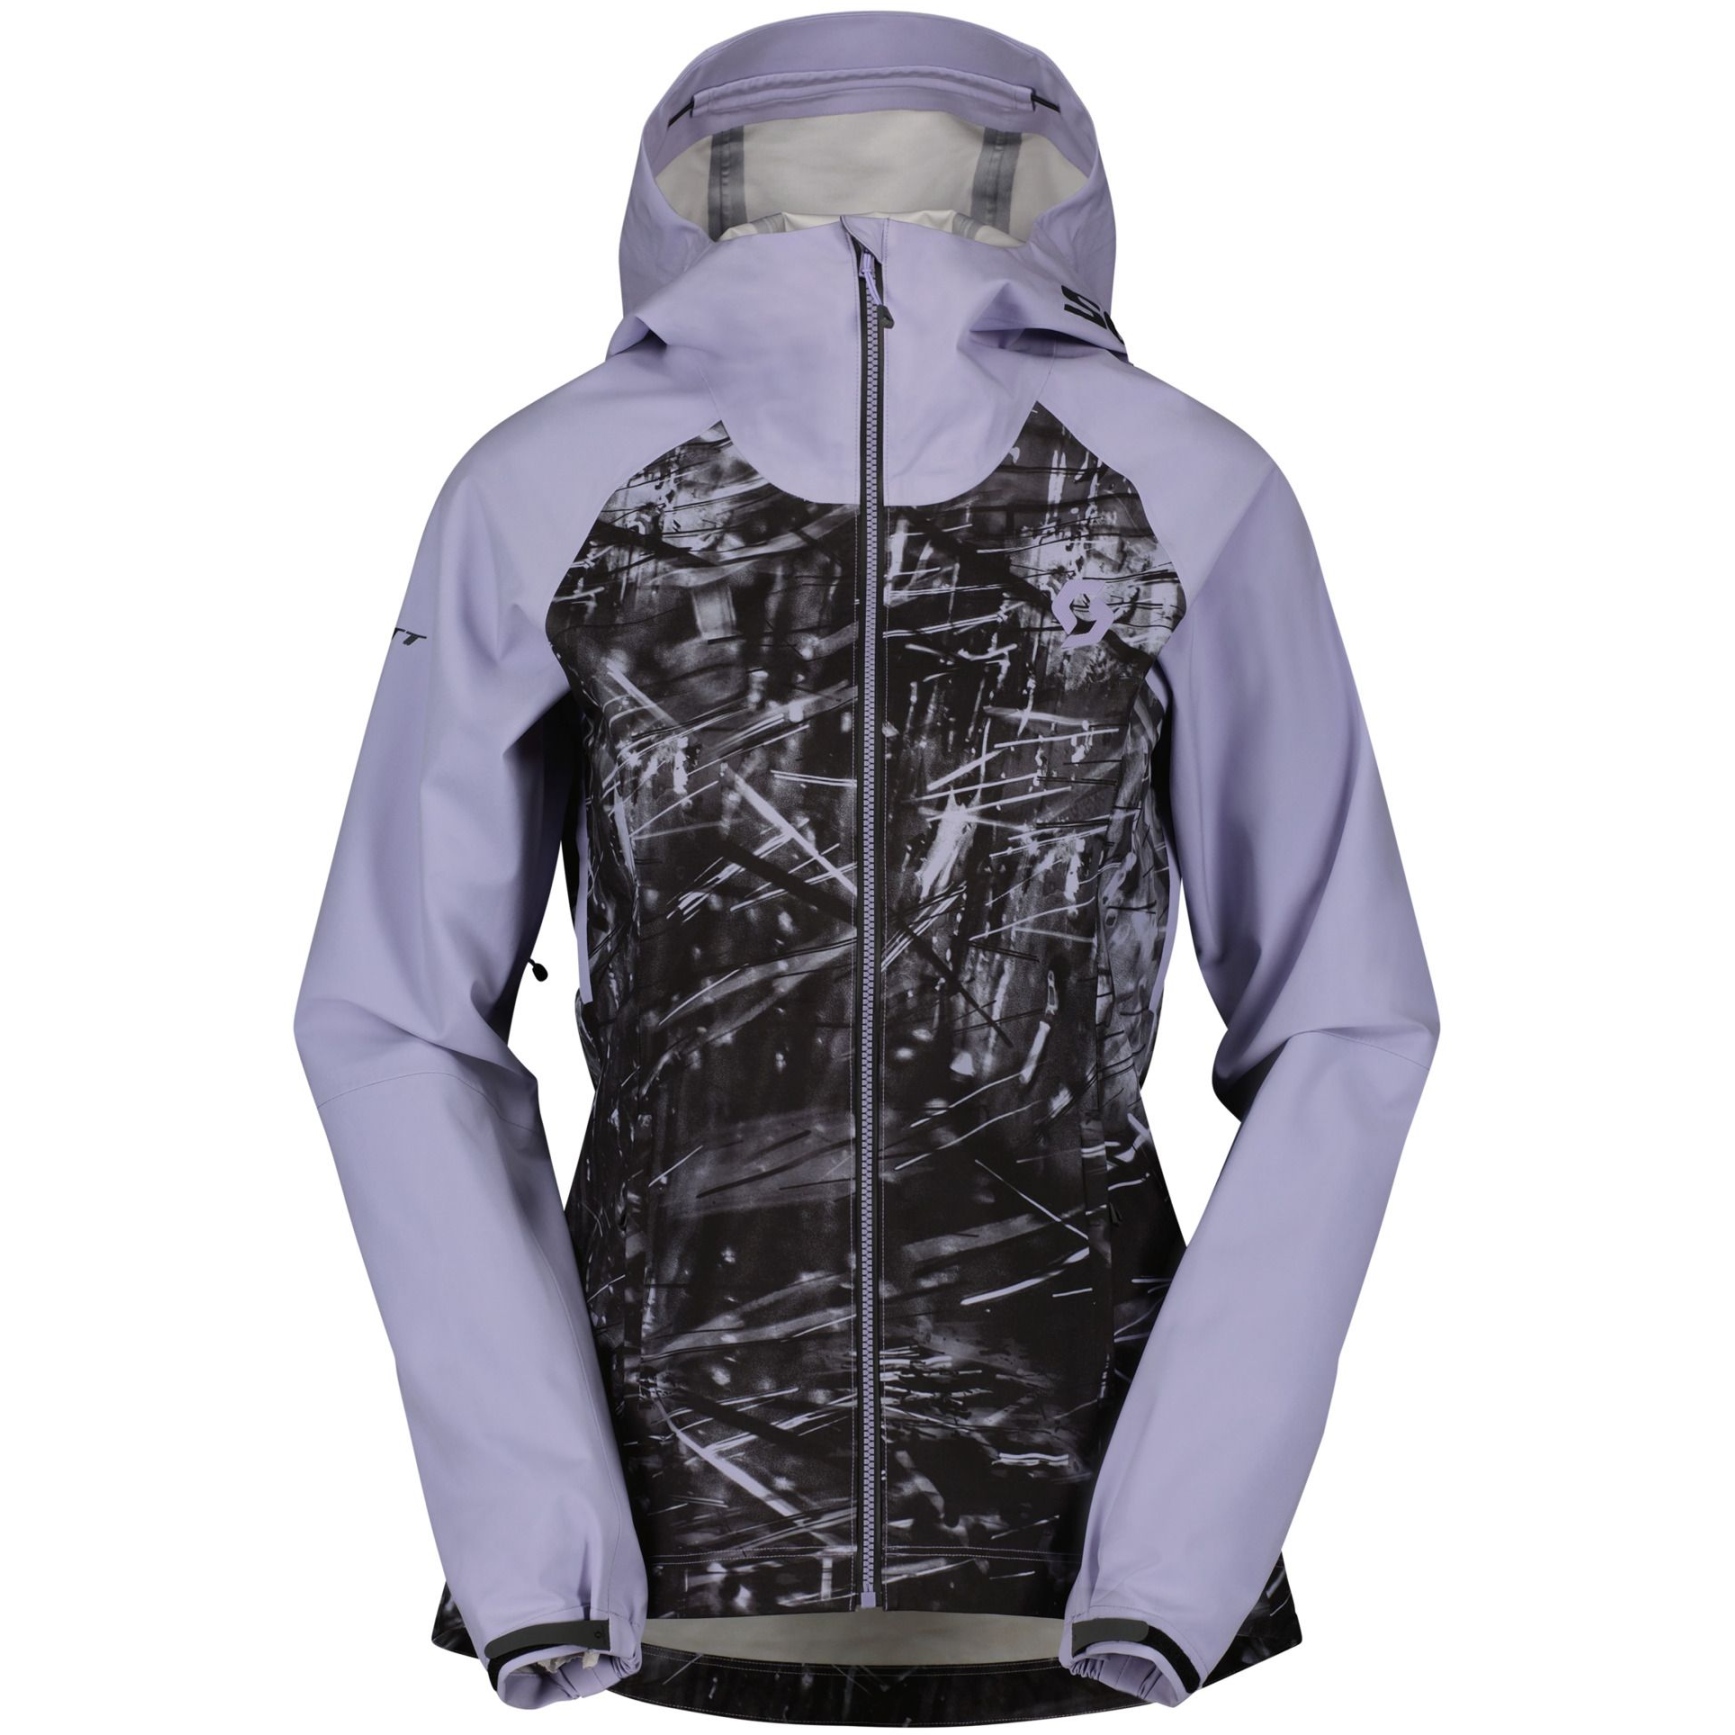 Produktbild von SCOTT Trail Storm WP Radjacke Damen - heather purple/black